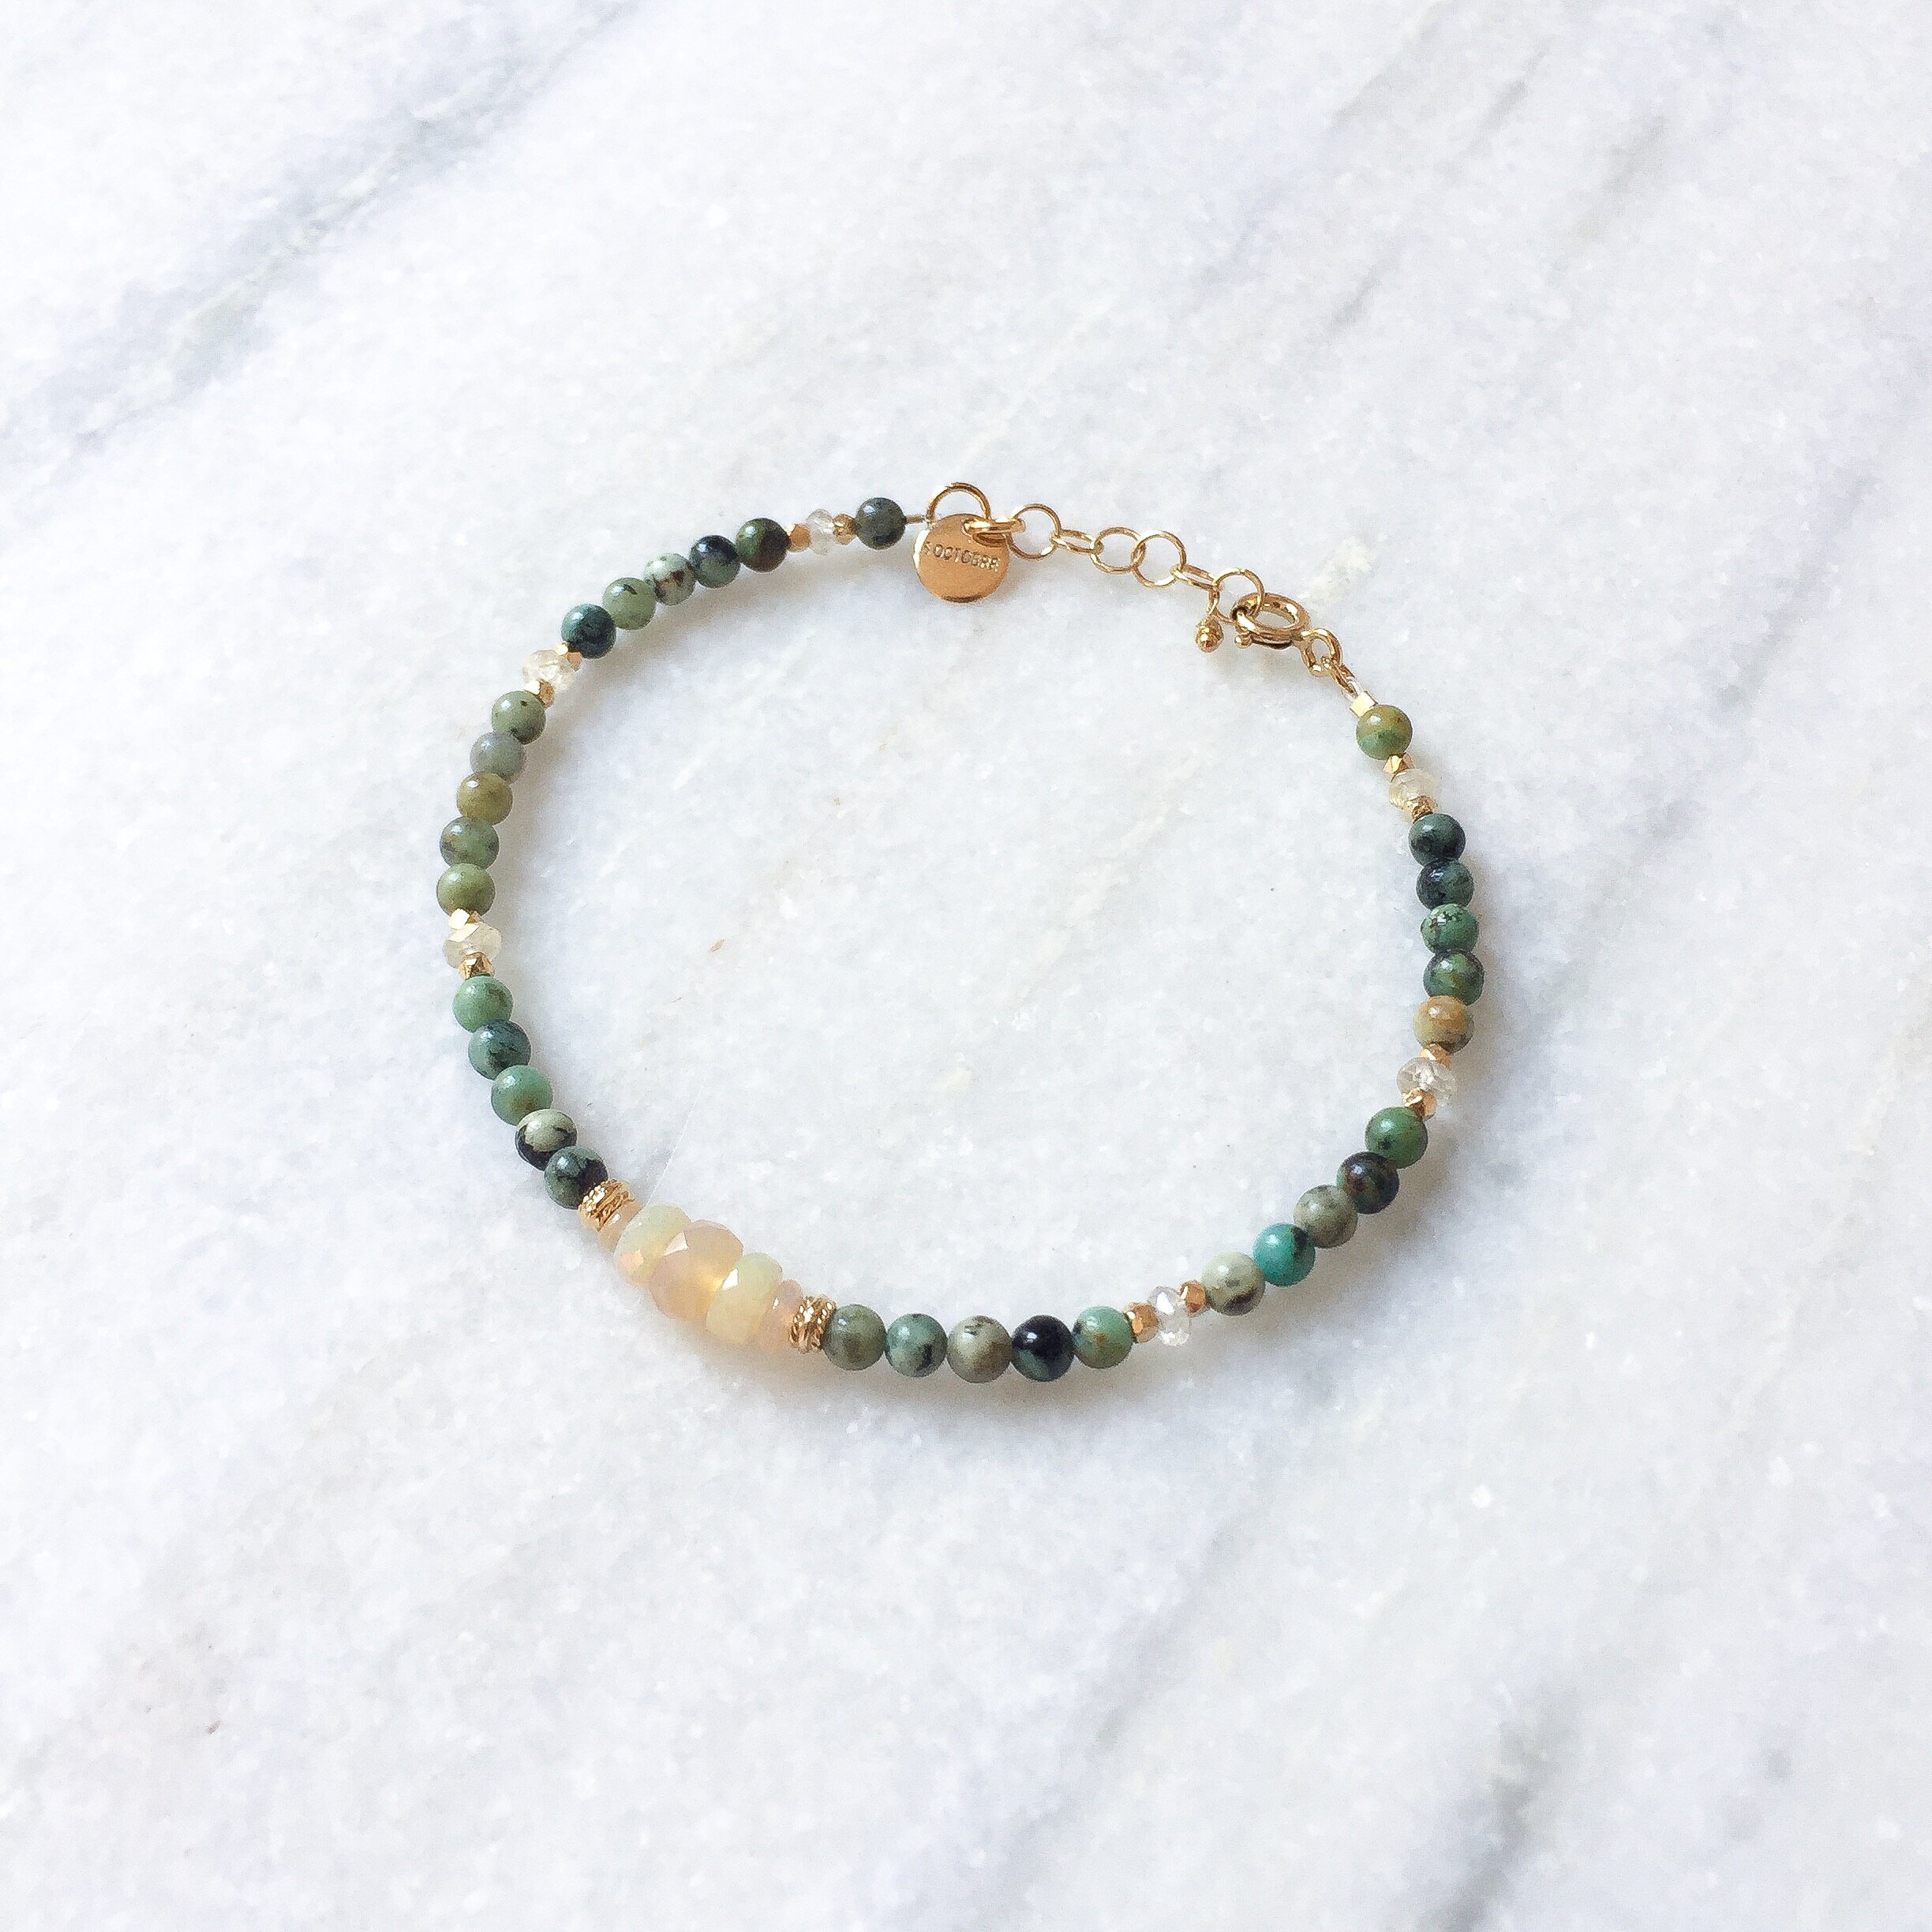 Geniune Tiny Turquoise Beaded Bracelet • Natural Turquoise Bracelet • 3mm Beads • Gift for Her • Gemstone Bracelet